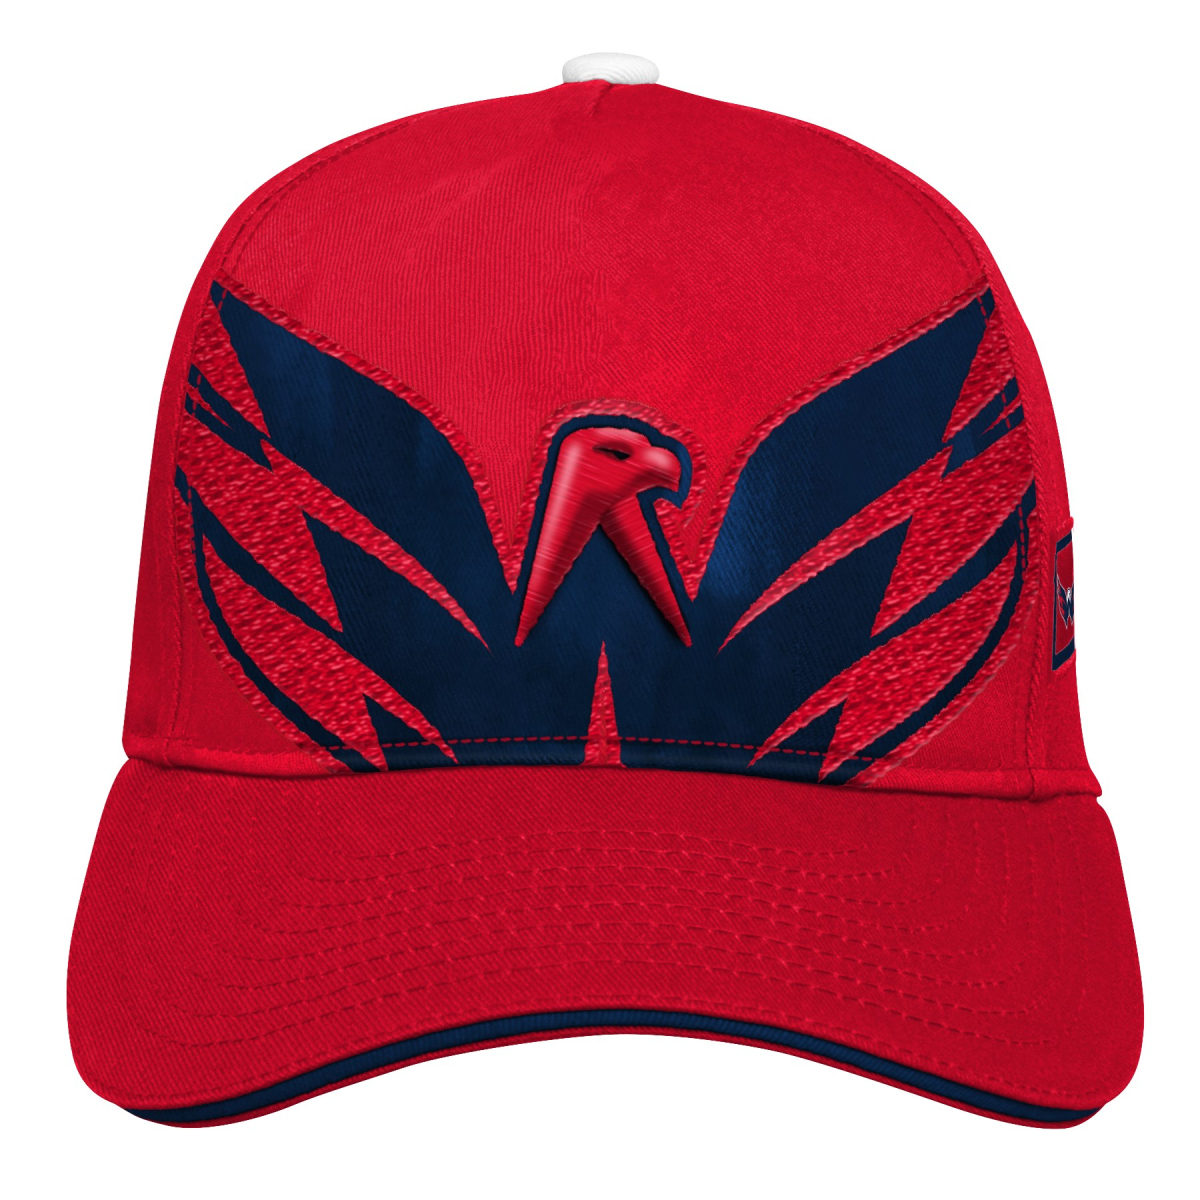 Washington Capitals dětská čepice baseballová kšiltovka Big Face red